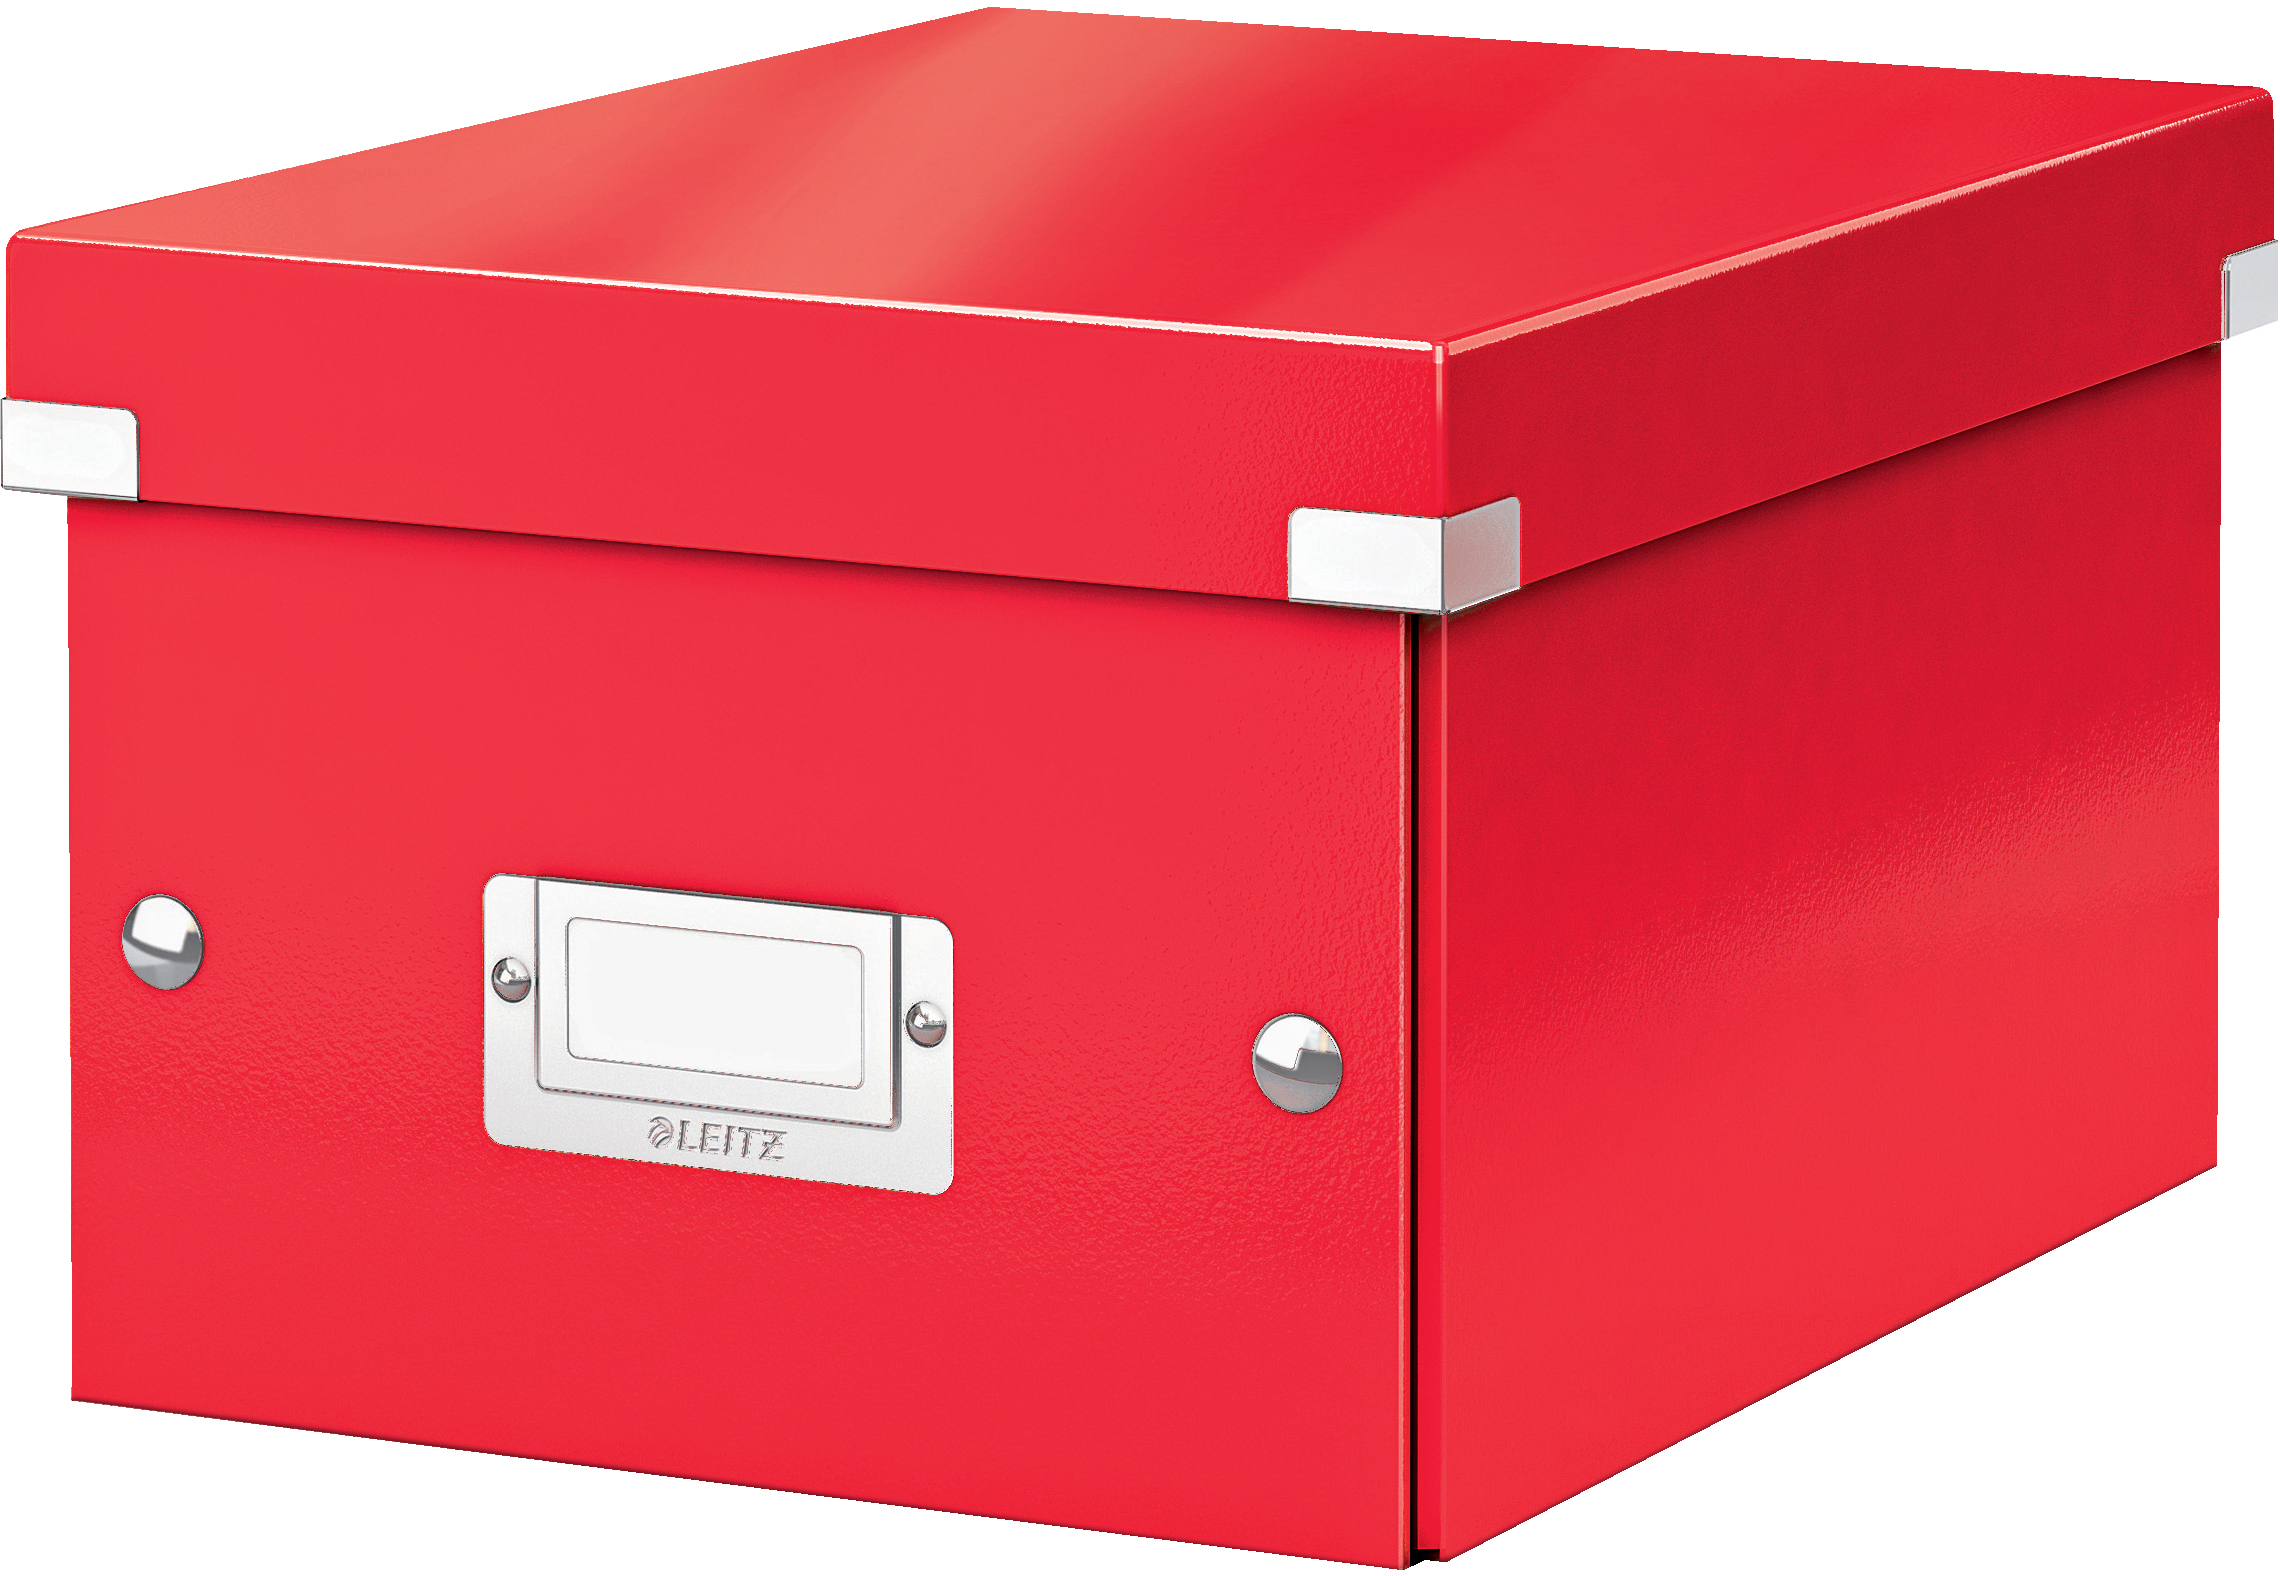 LEITZ Click&Store WOW Box S 6043-00-26 rouge 22x16x28.2cm rouge 22x16x28.2cm